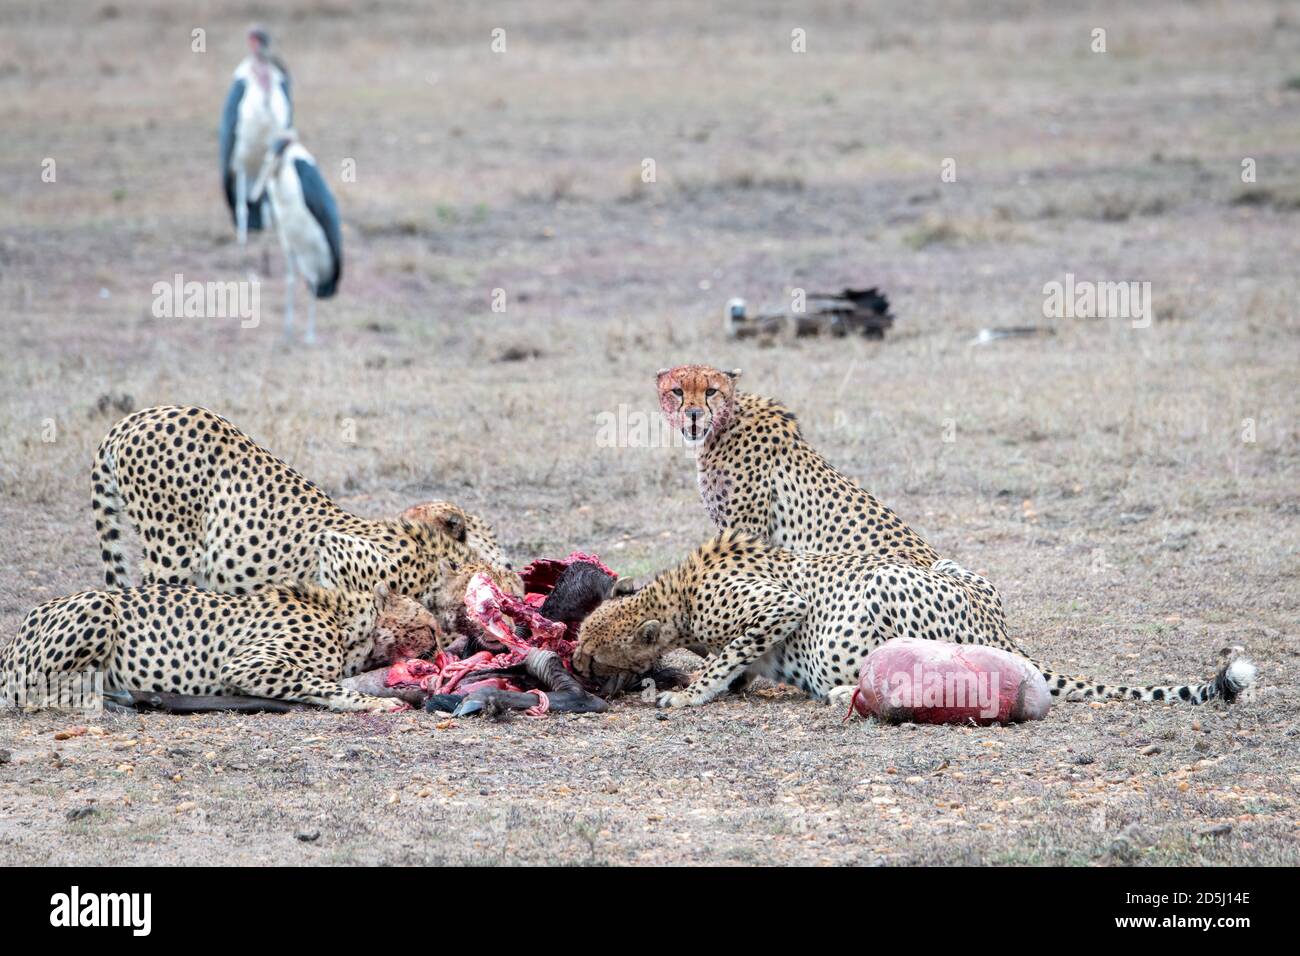 Les cheetahs (Acinonyx jubatus) s'enorgent sur une mort récente au Kenya Banque D'Images